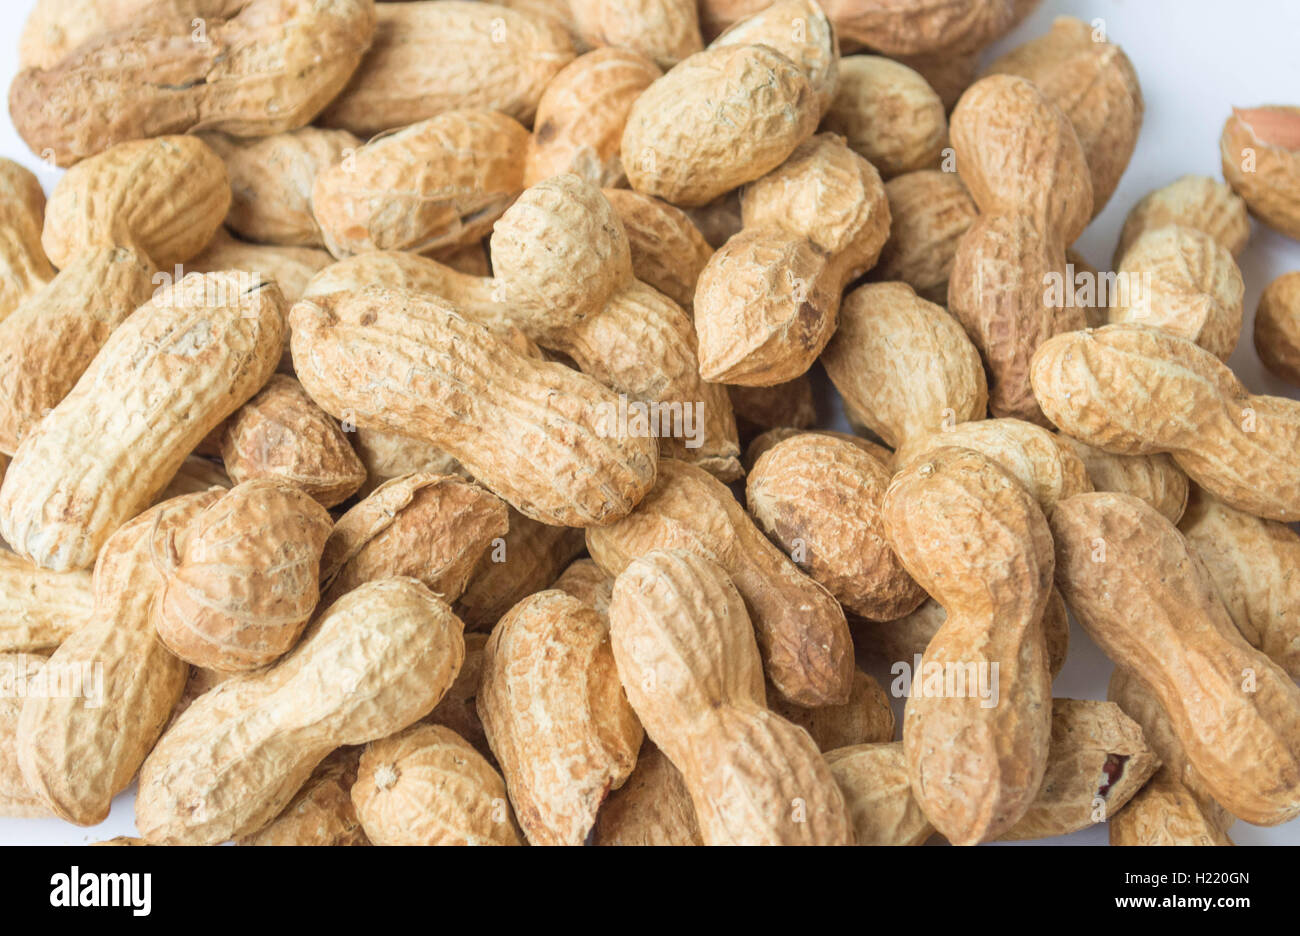 Tasty peanuts Stock Photo